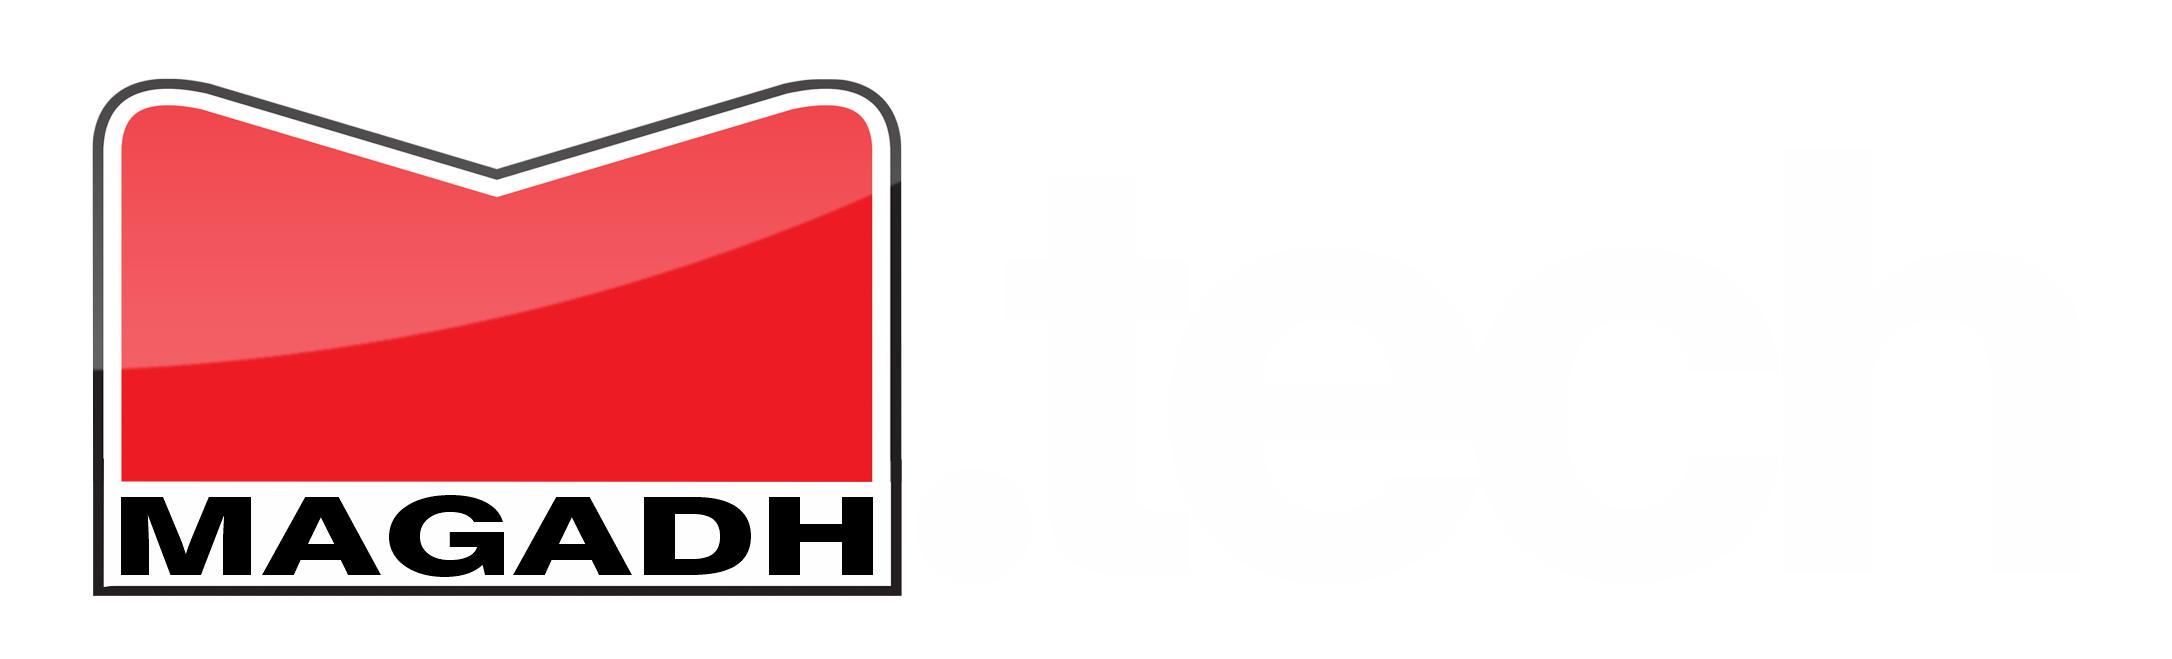 magadh logo